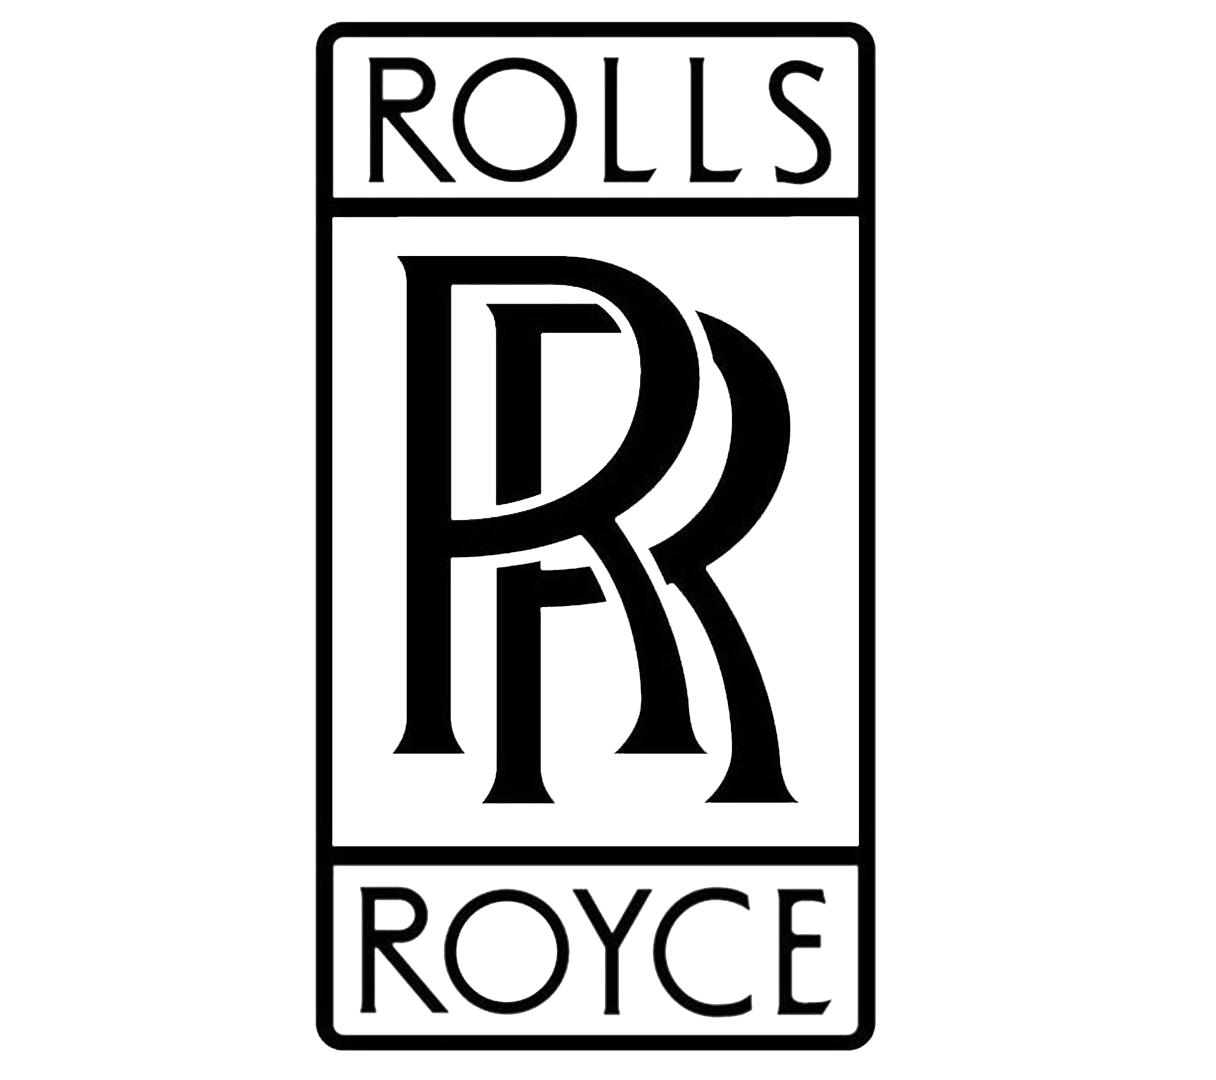 RollsRoyce Logo HD Png Meaning Information